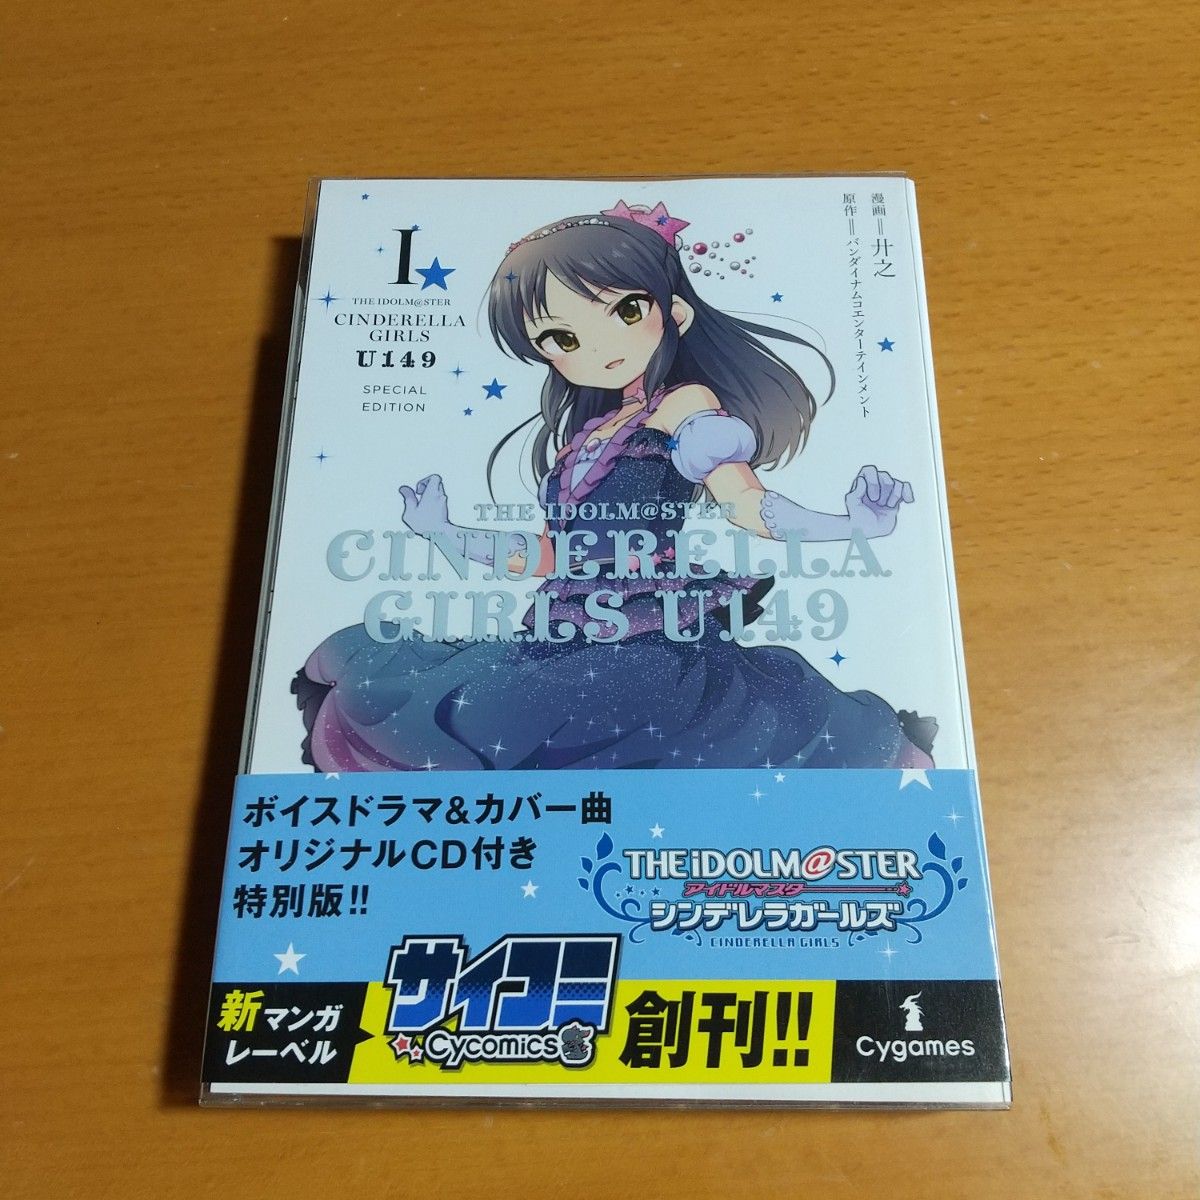 アイドルマスター シンデレラガールズU149オリジナルCD付き特別版1巻